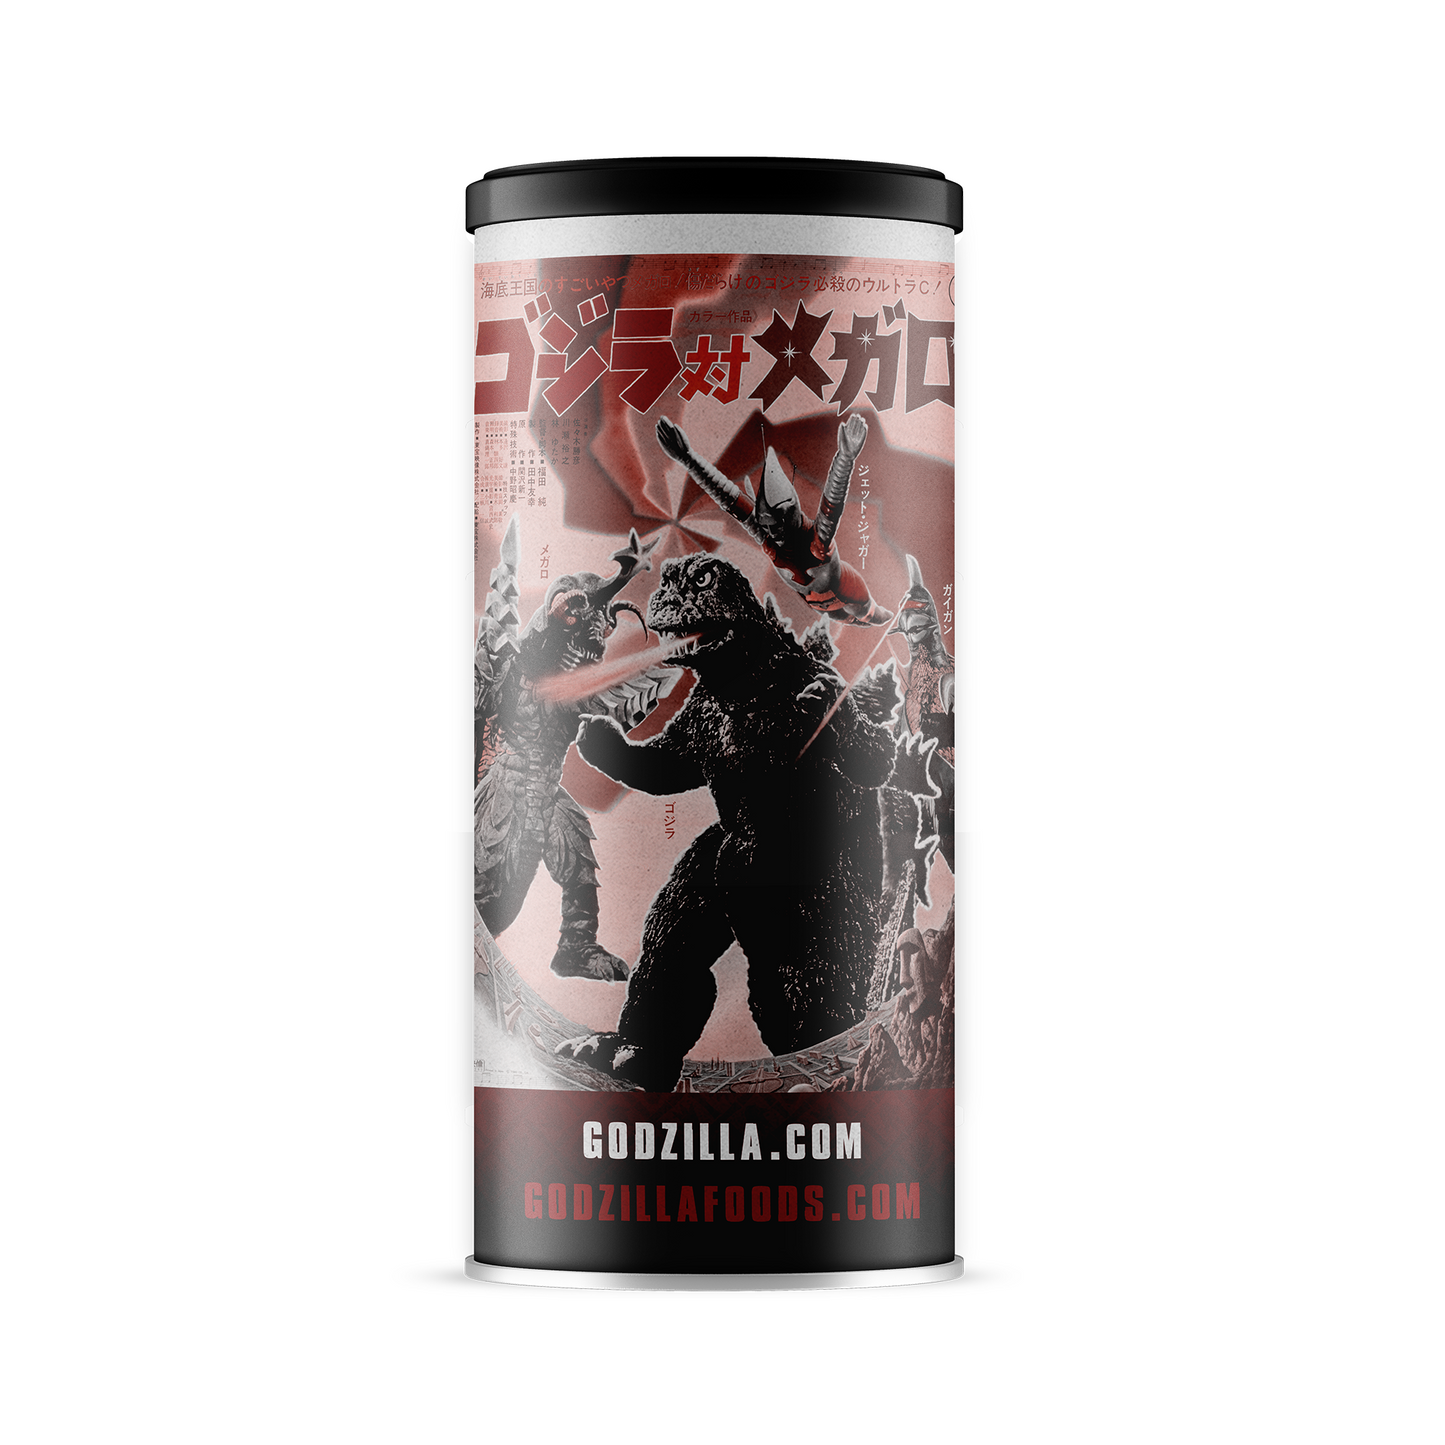 Godzilla's Hot Cocoa 3-Pack